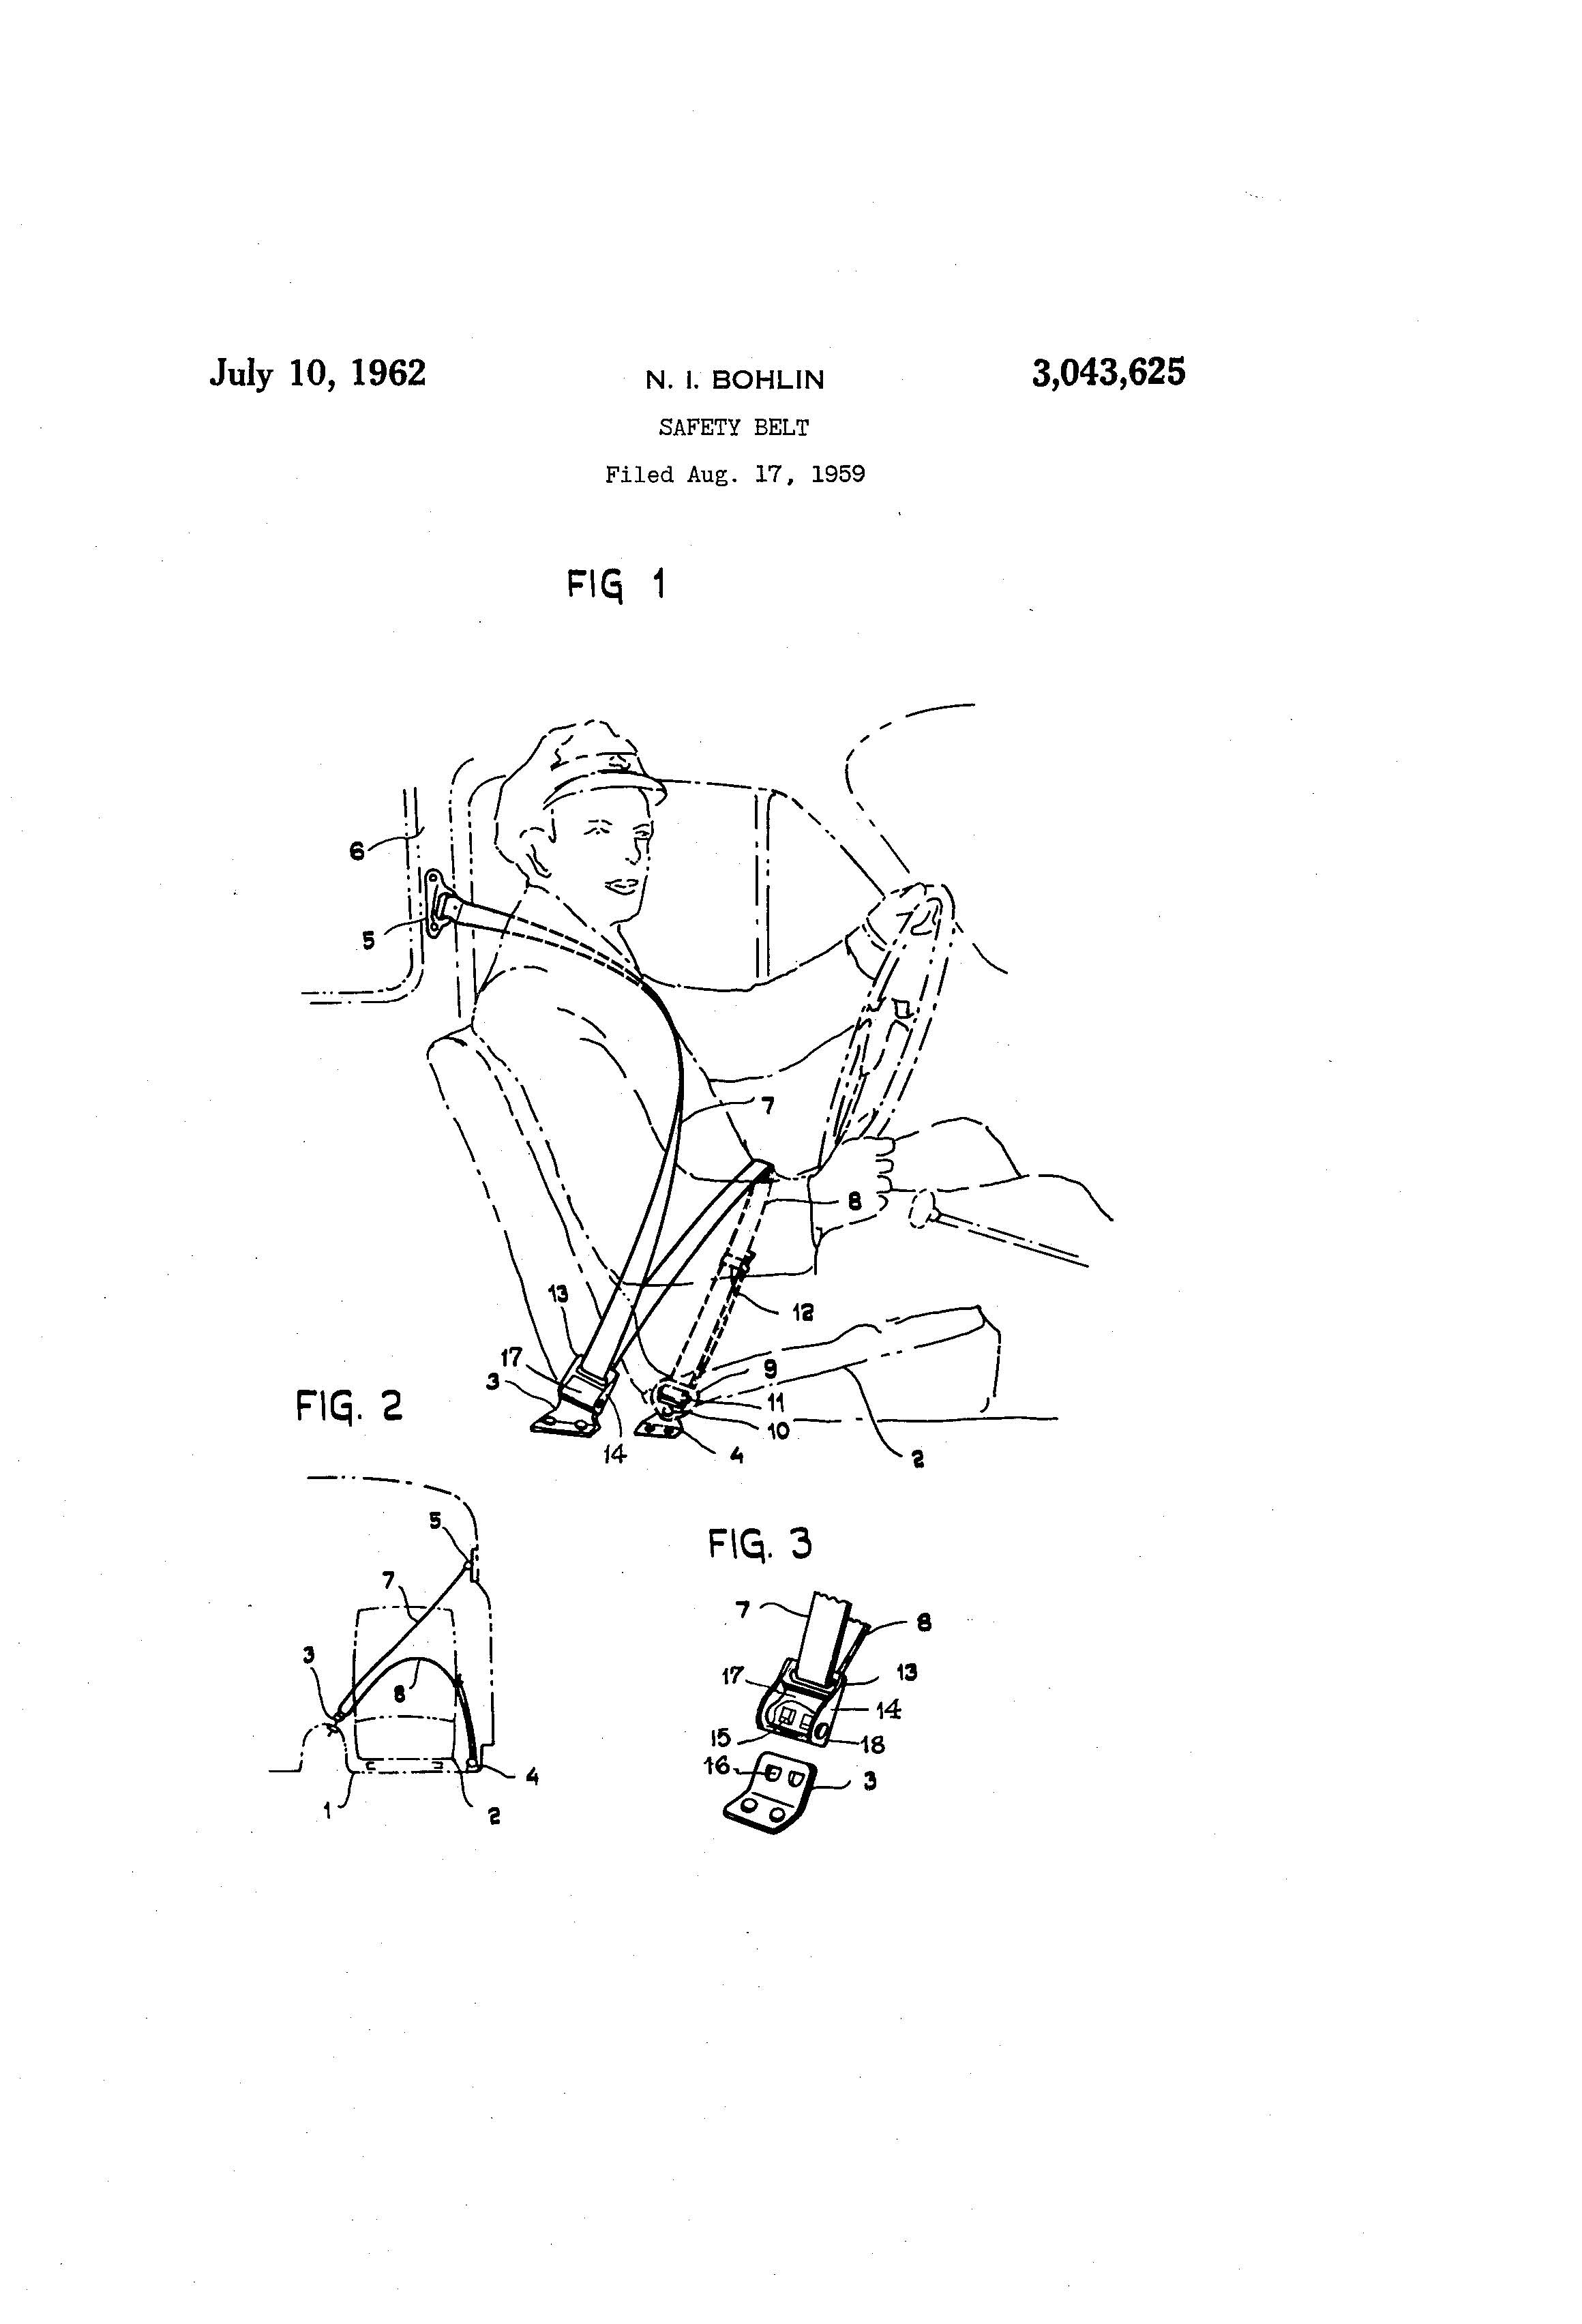 Safety Belt Patent